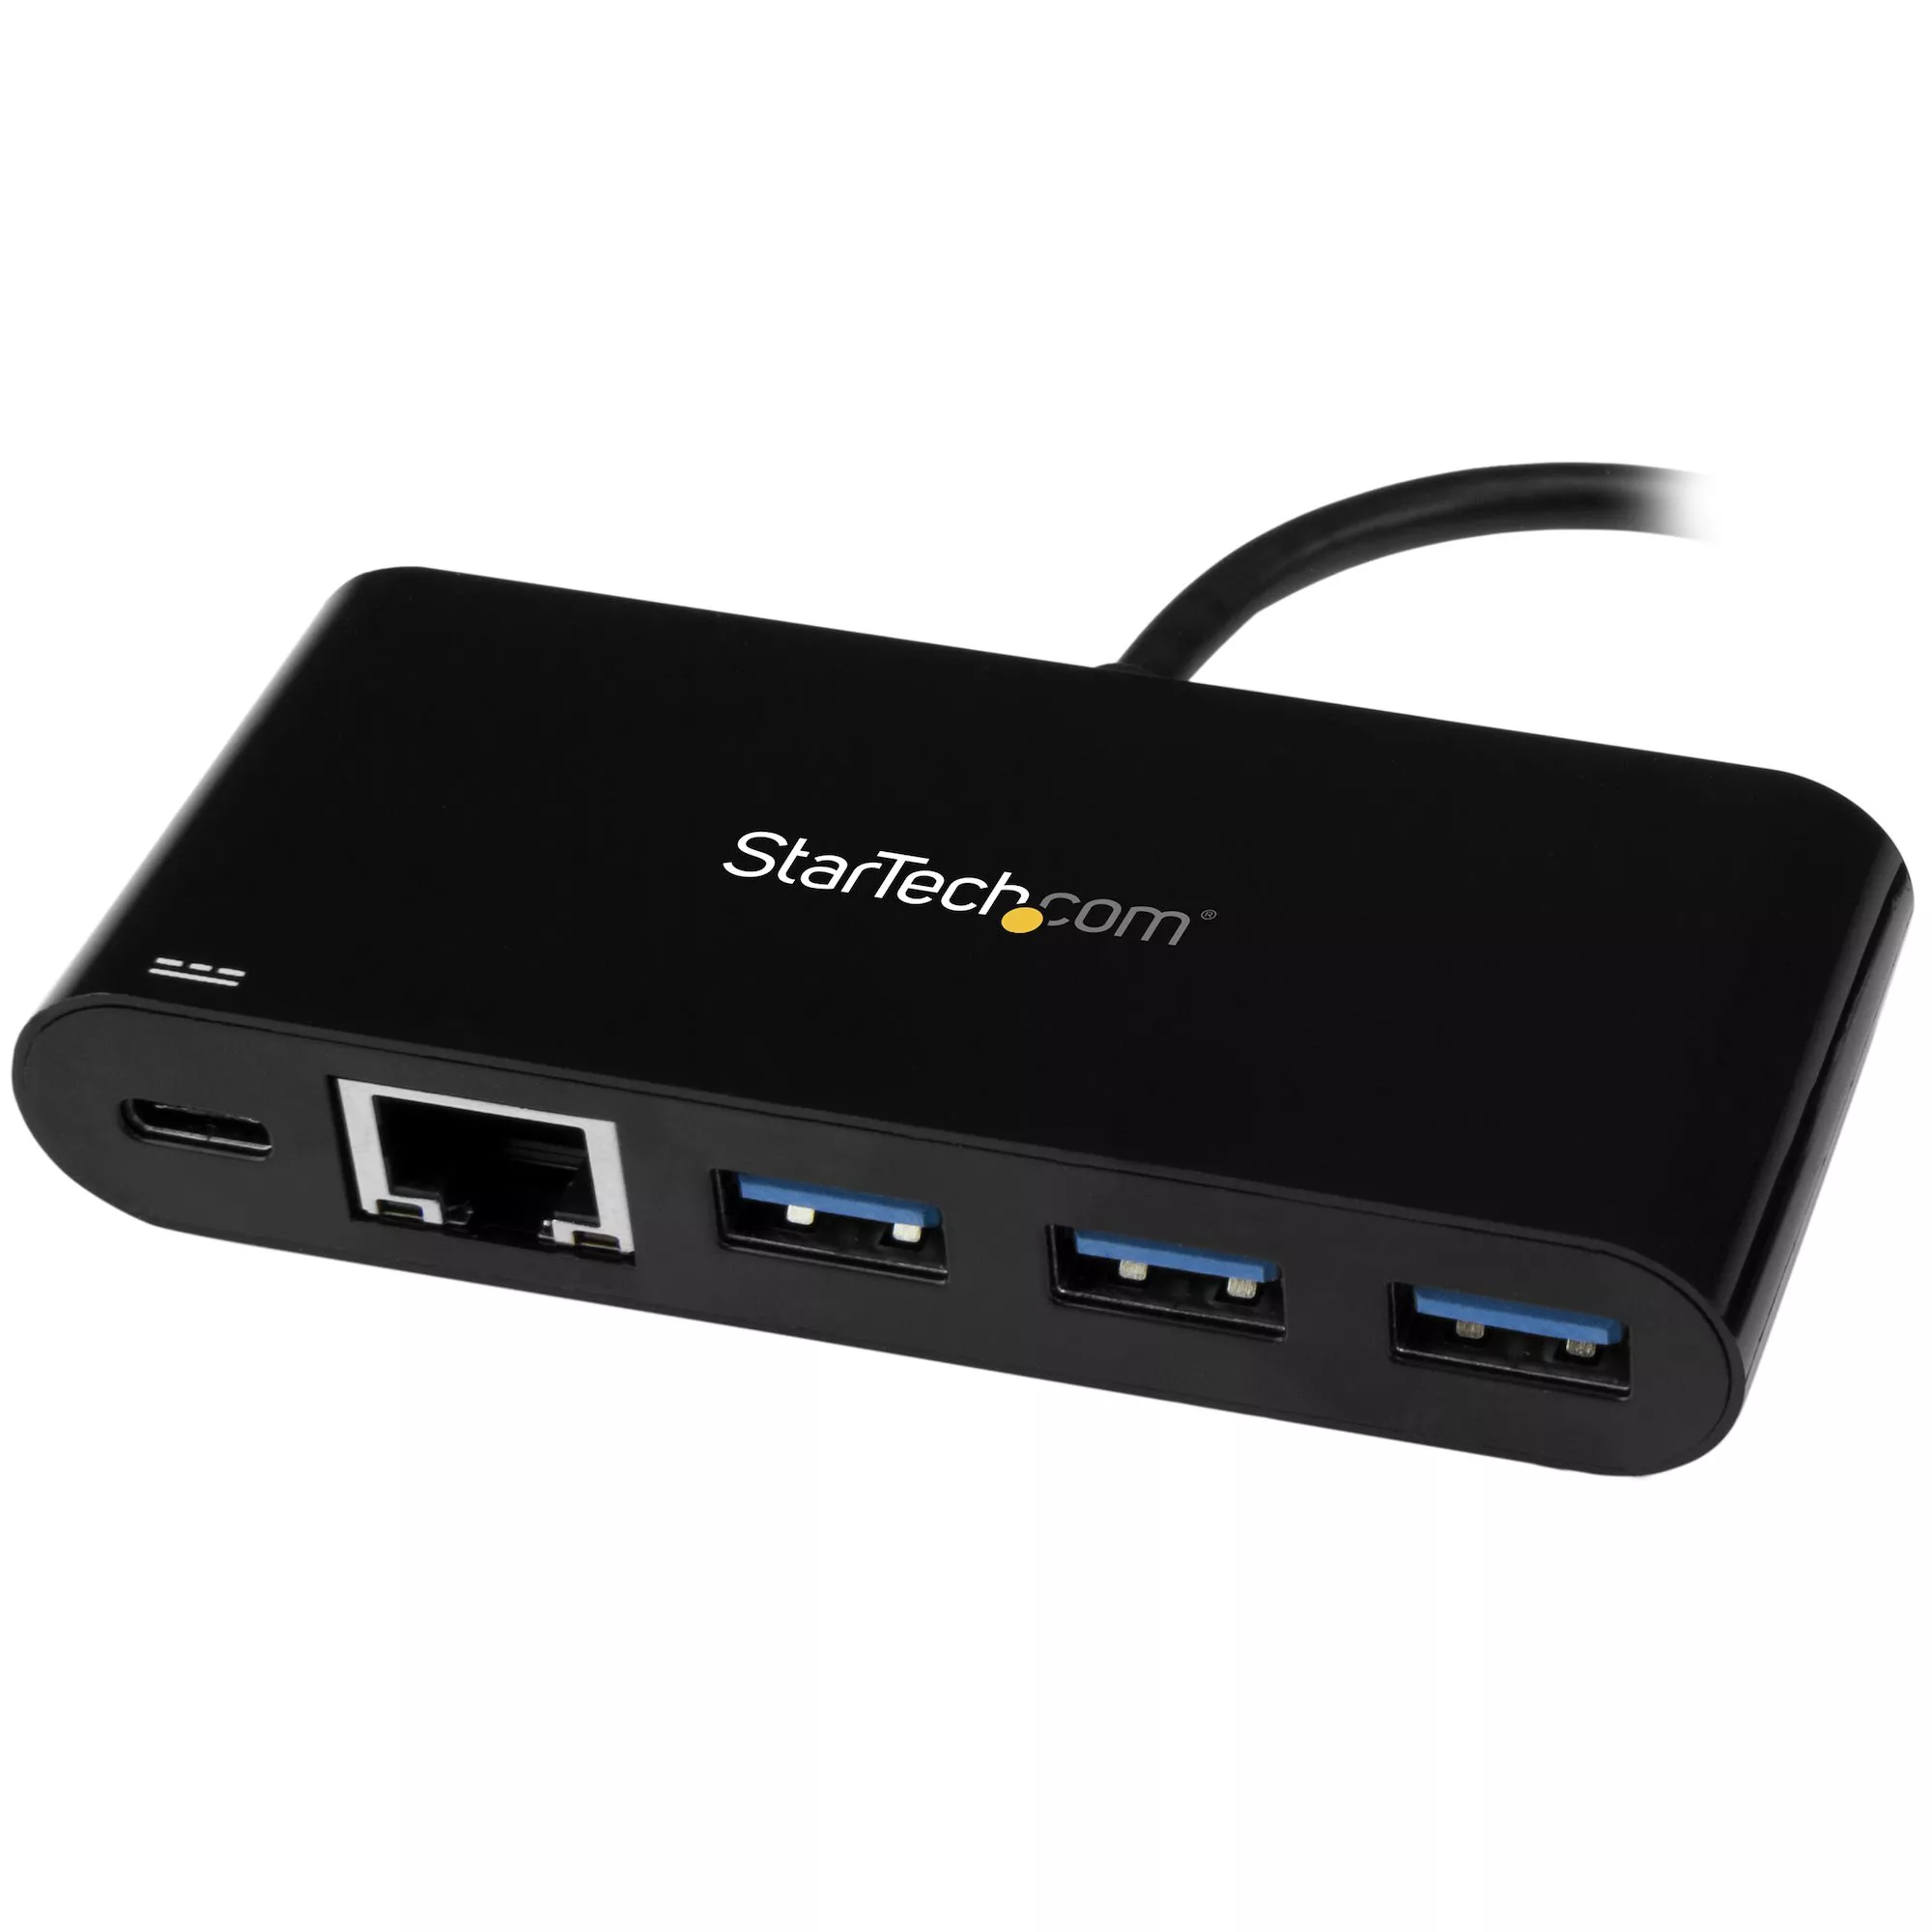 Achat StarTech.com Hub USB 3.0 3 Ports avec Gigabit sur hello RSE - visuel 7